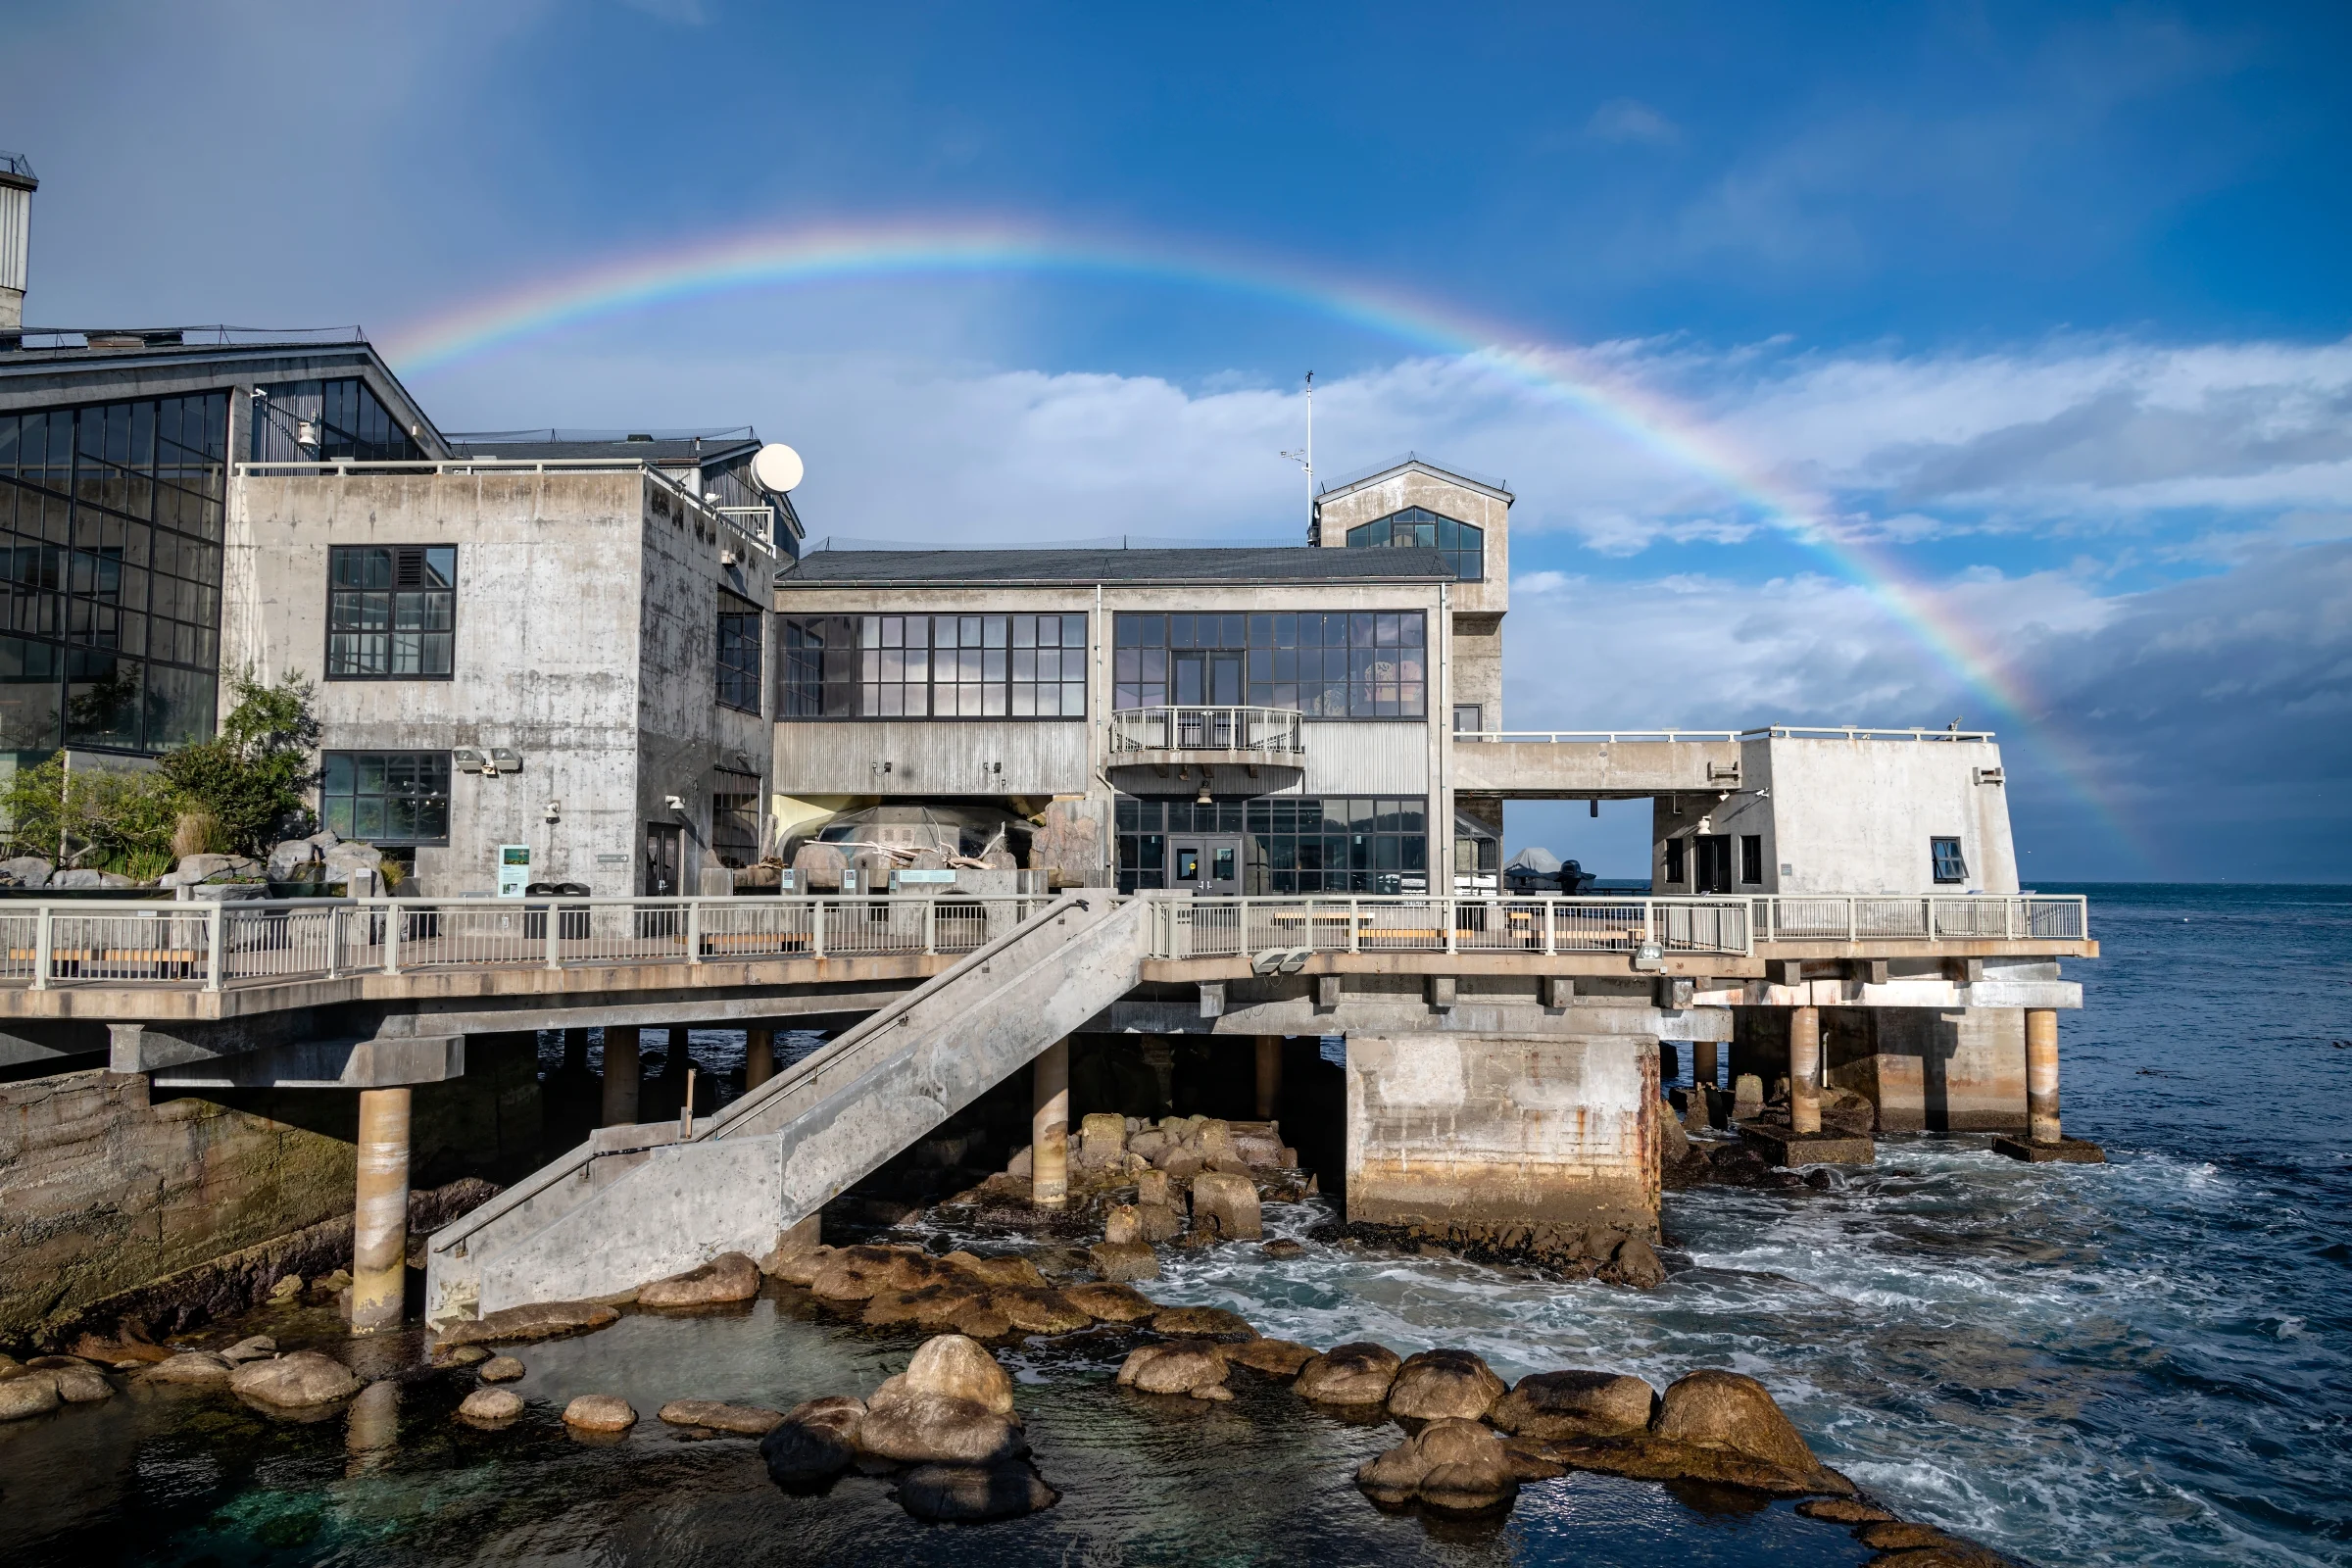 The Monterey Bay Aquarium in Monterey, California